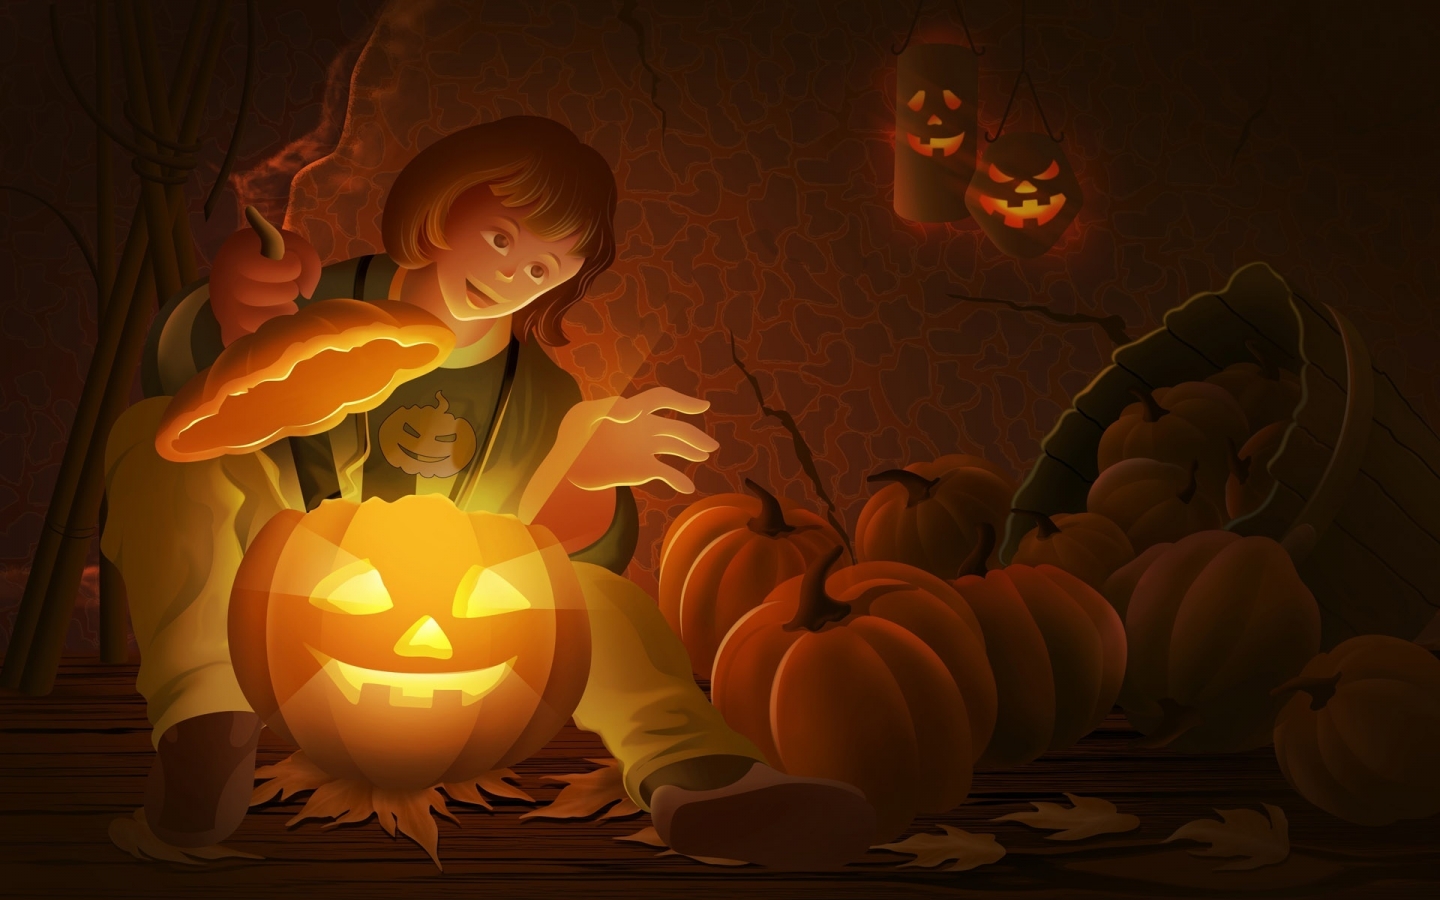 Cool Halloween Pumpkin for 1440 x 900 widescreen resolution